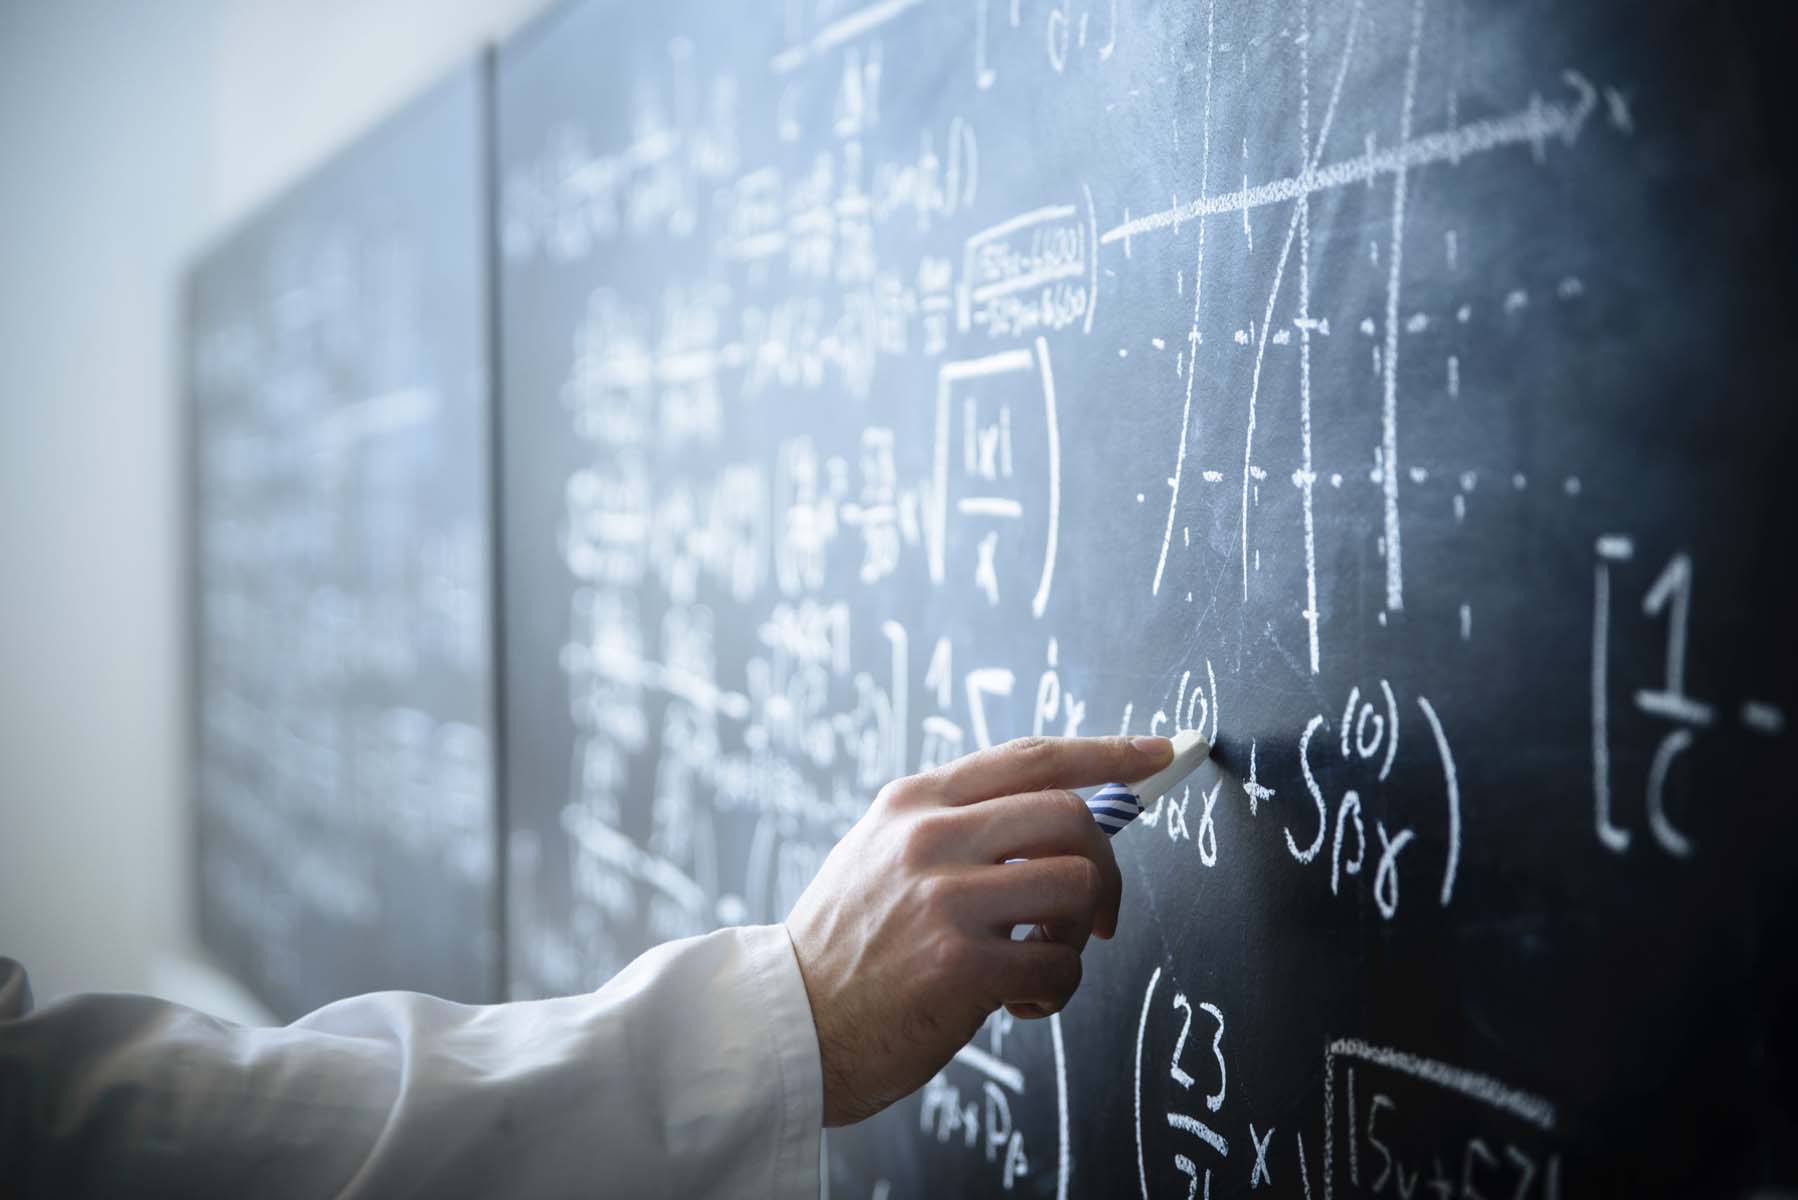 Milli Eğitim Bakanı Mahmut Özer okullarda başlatılacak olan "matematik seferberliği"nin' detaylarını açıkladı